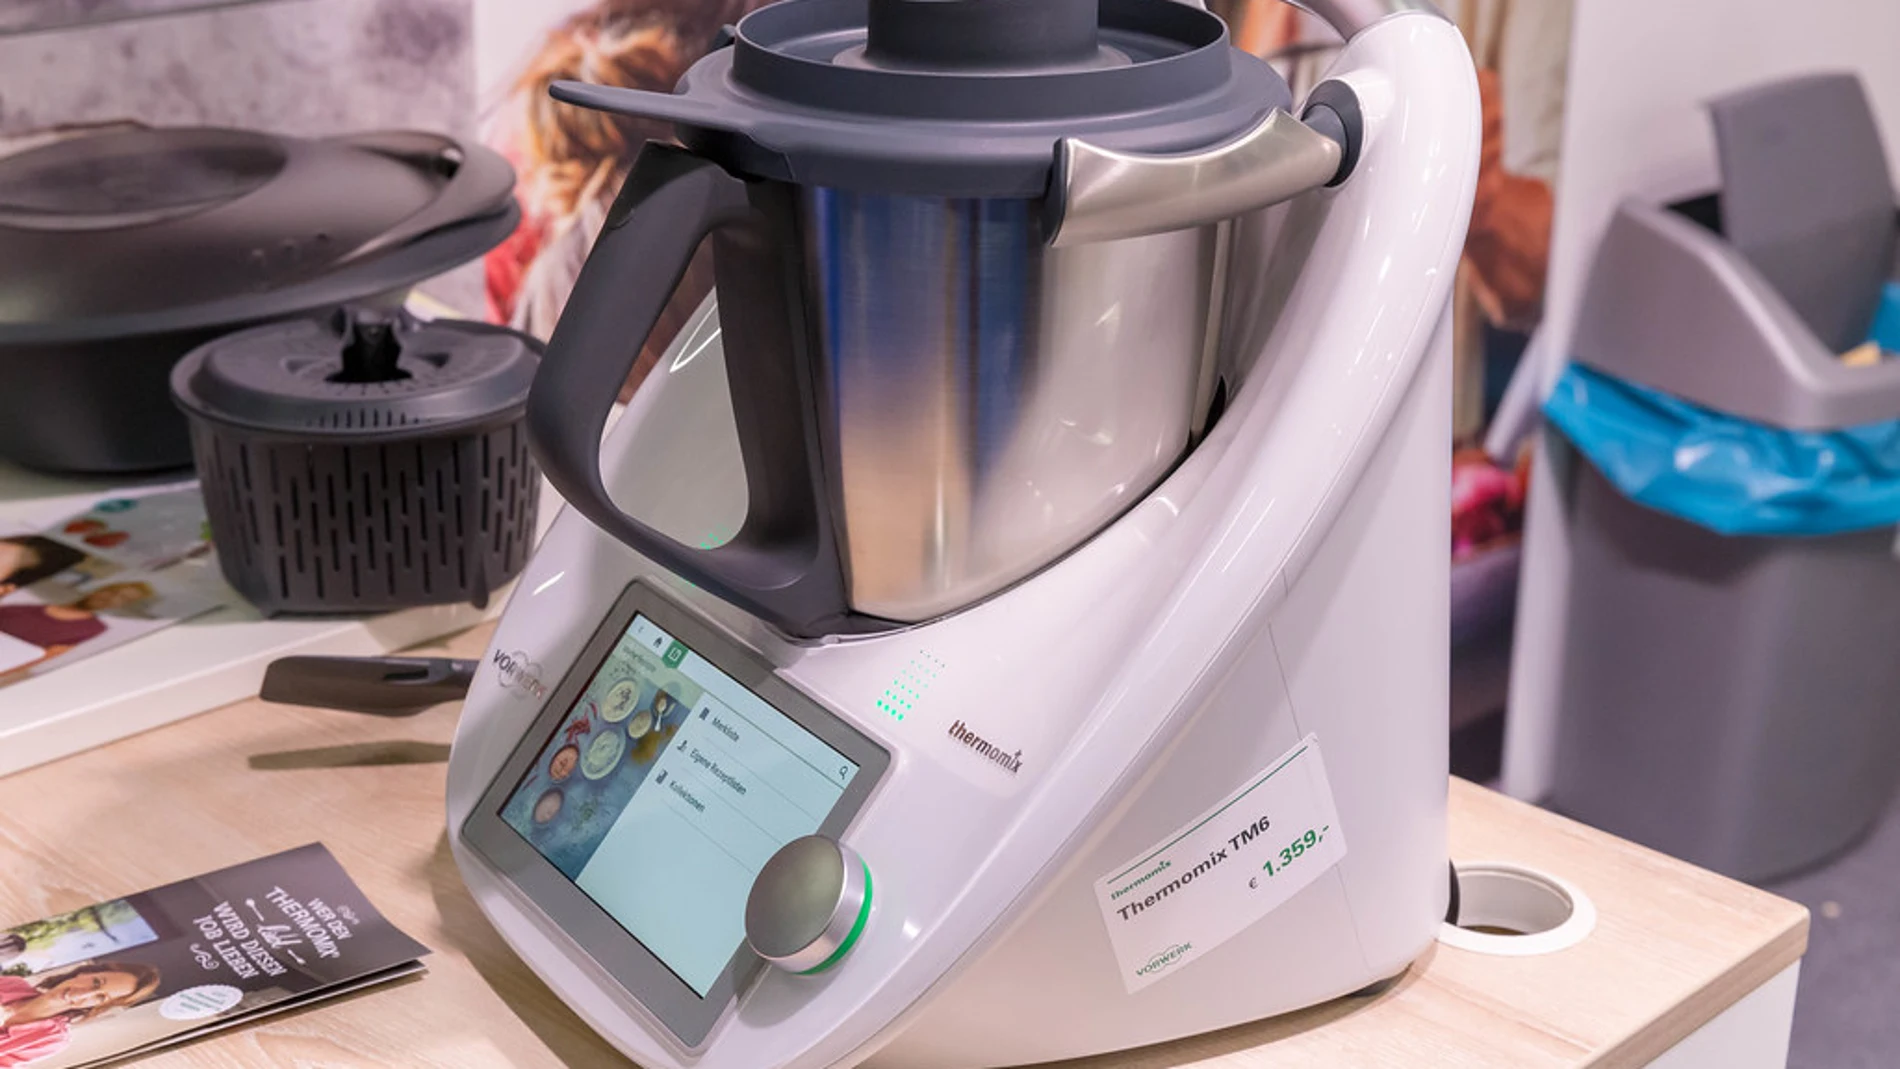 Lidl podrá seguir vendiendo su Thermomix: la justicia le ha dado la razón  sobre su robot de cocina